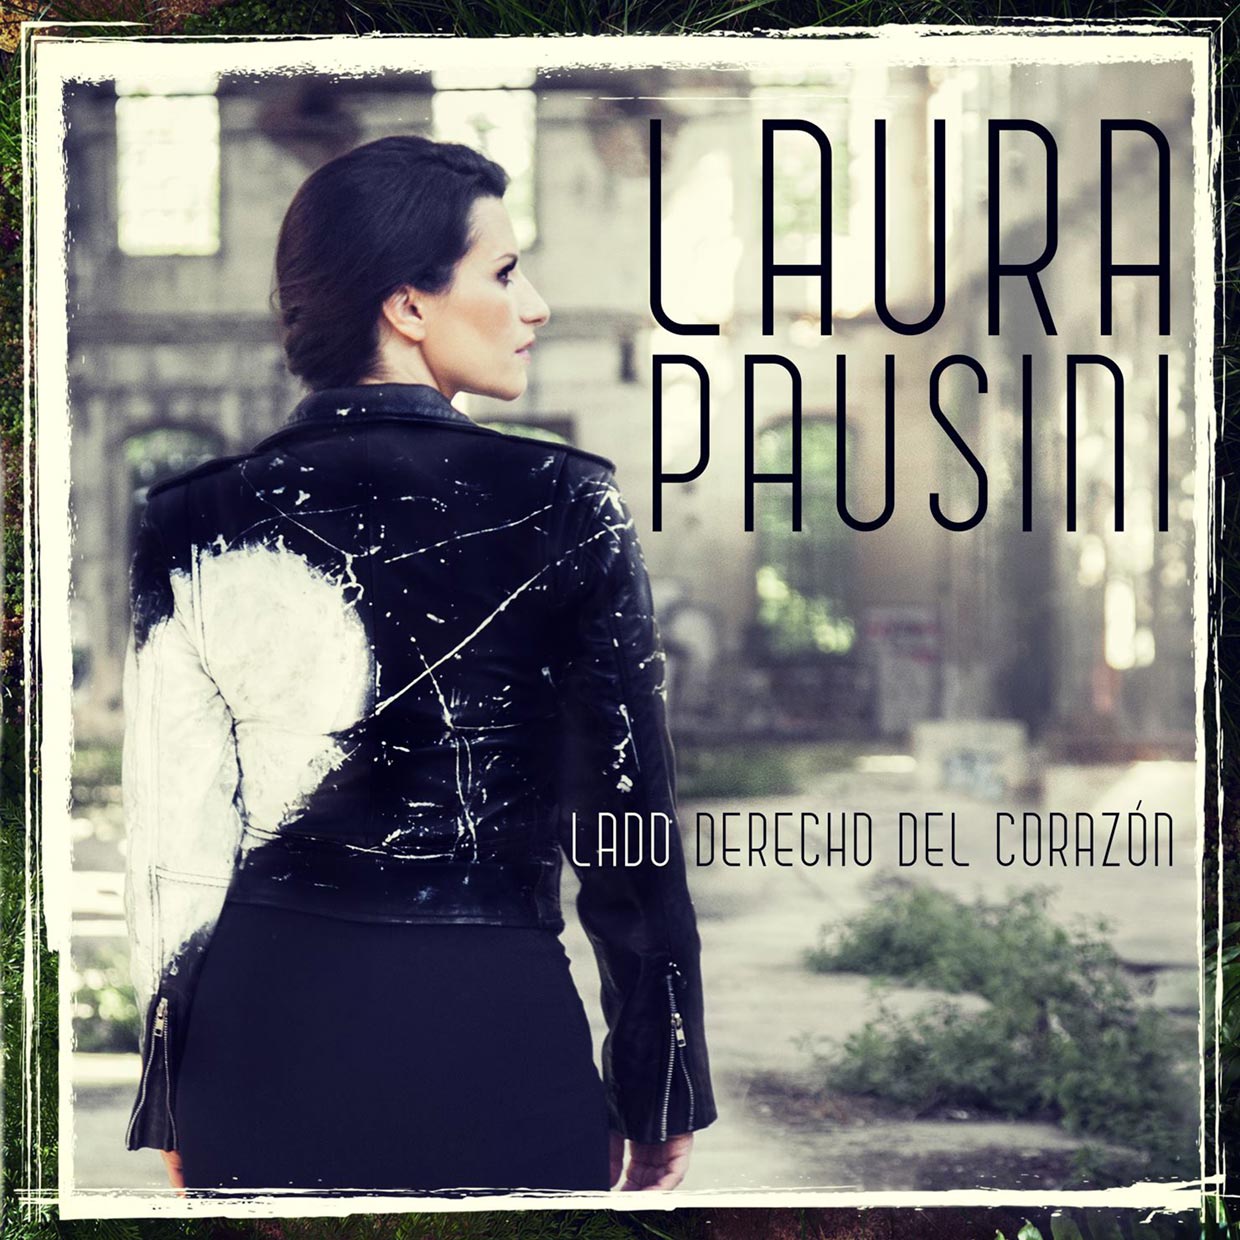 Laura Pausini: Lado derecho del corazón, la portada de la canción